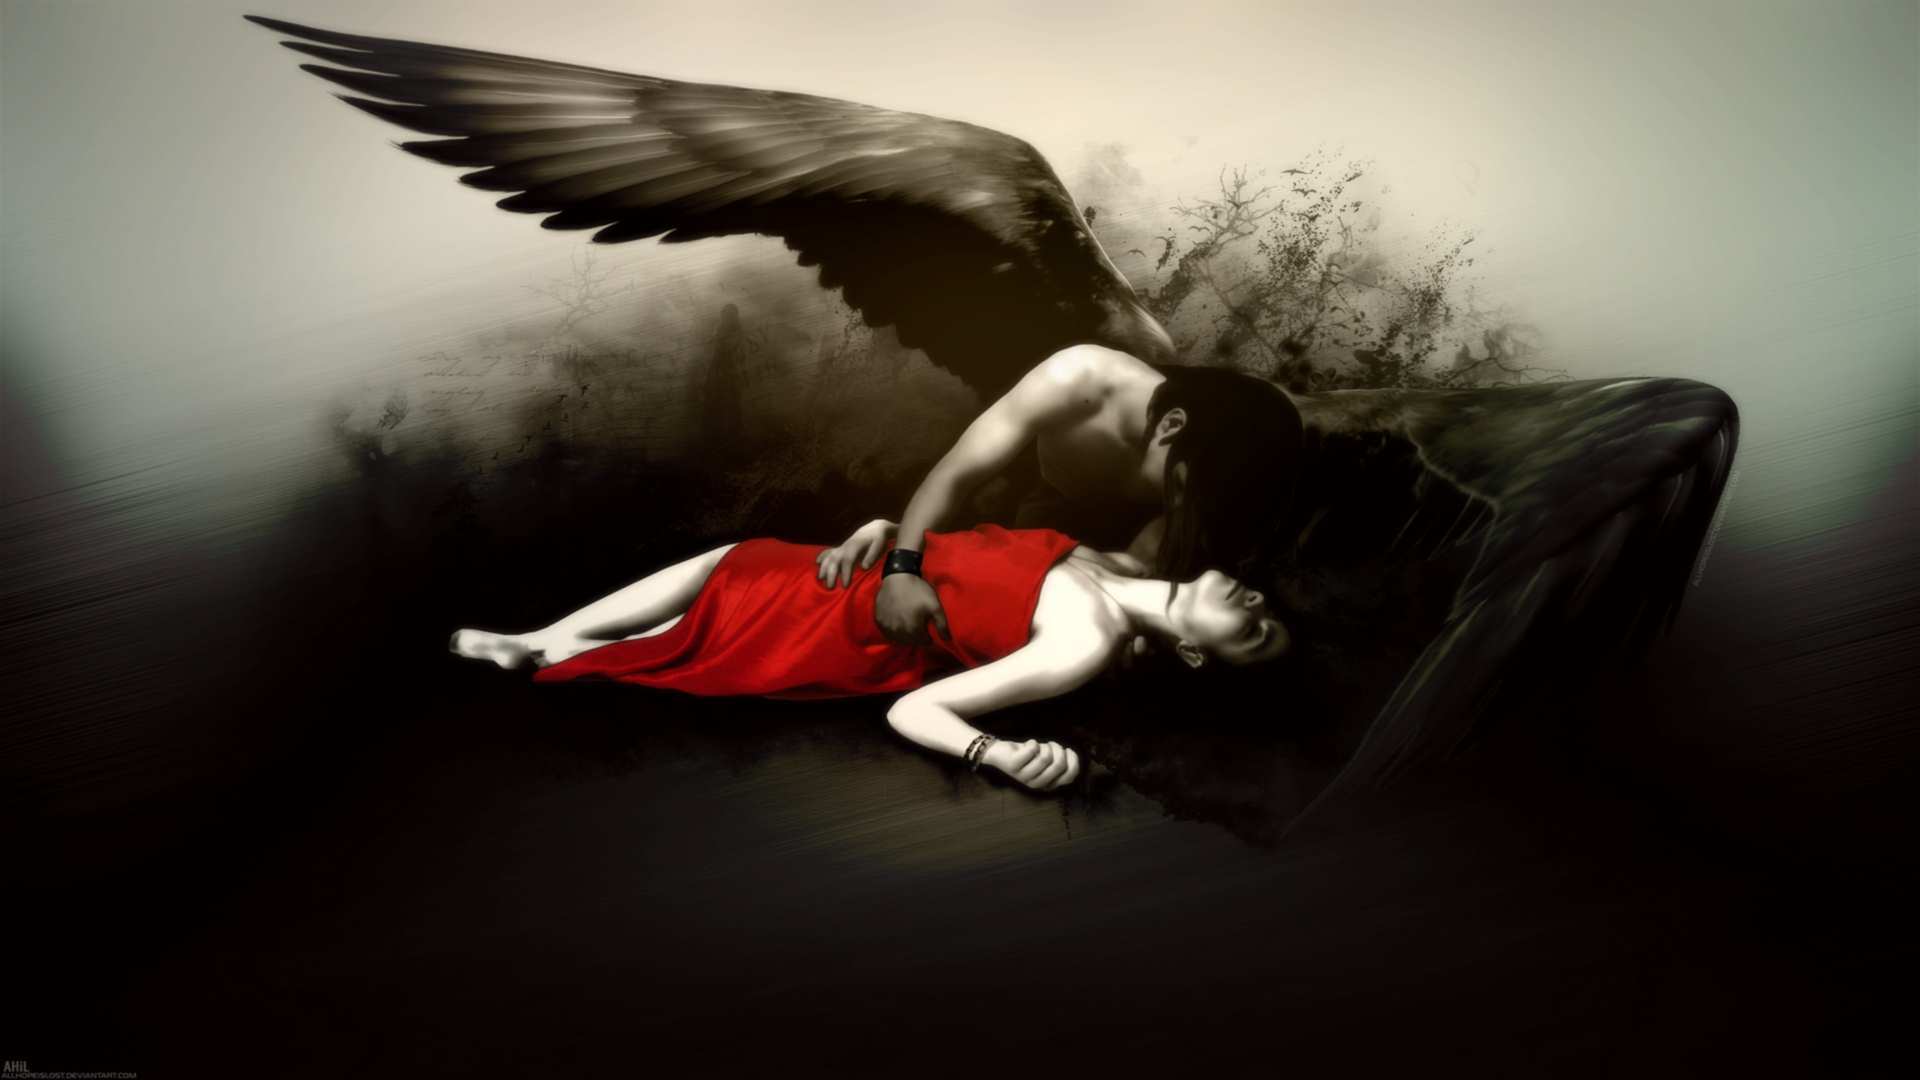 fantasy fallen angel gothic dark wings mood emotion sad sorrow death